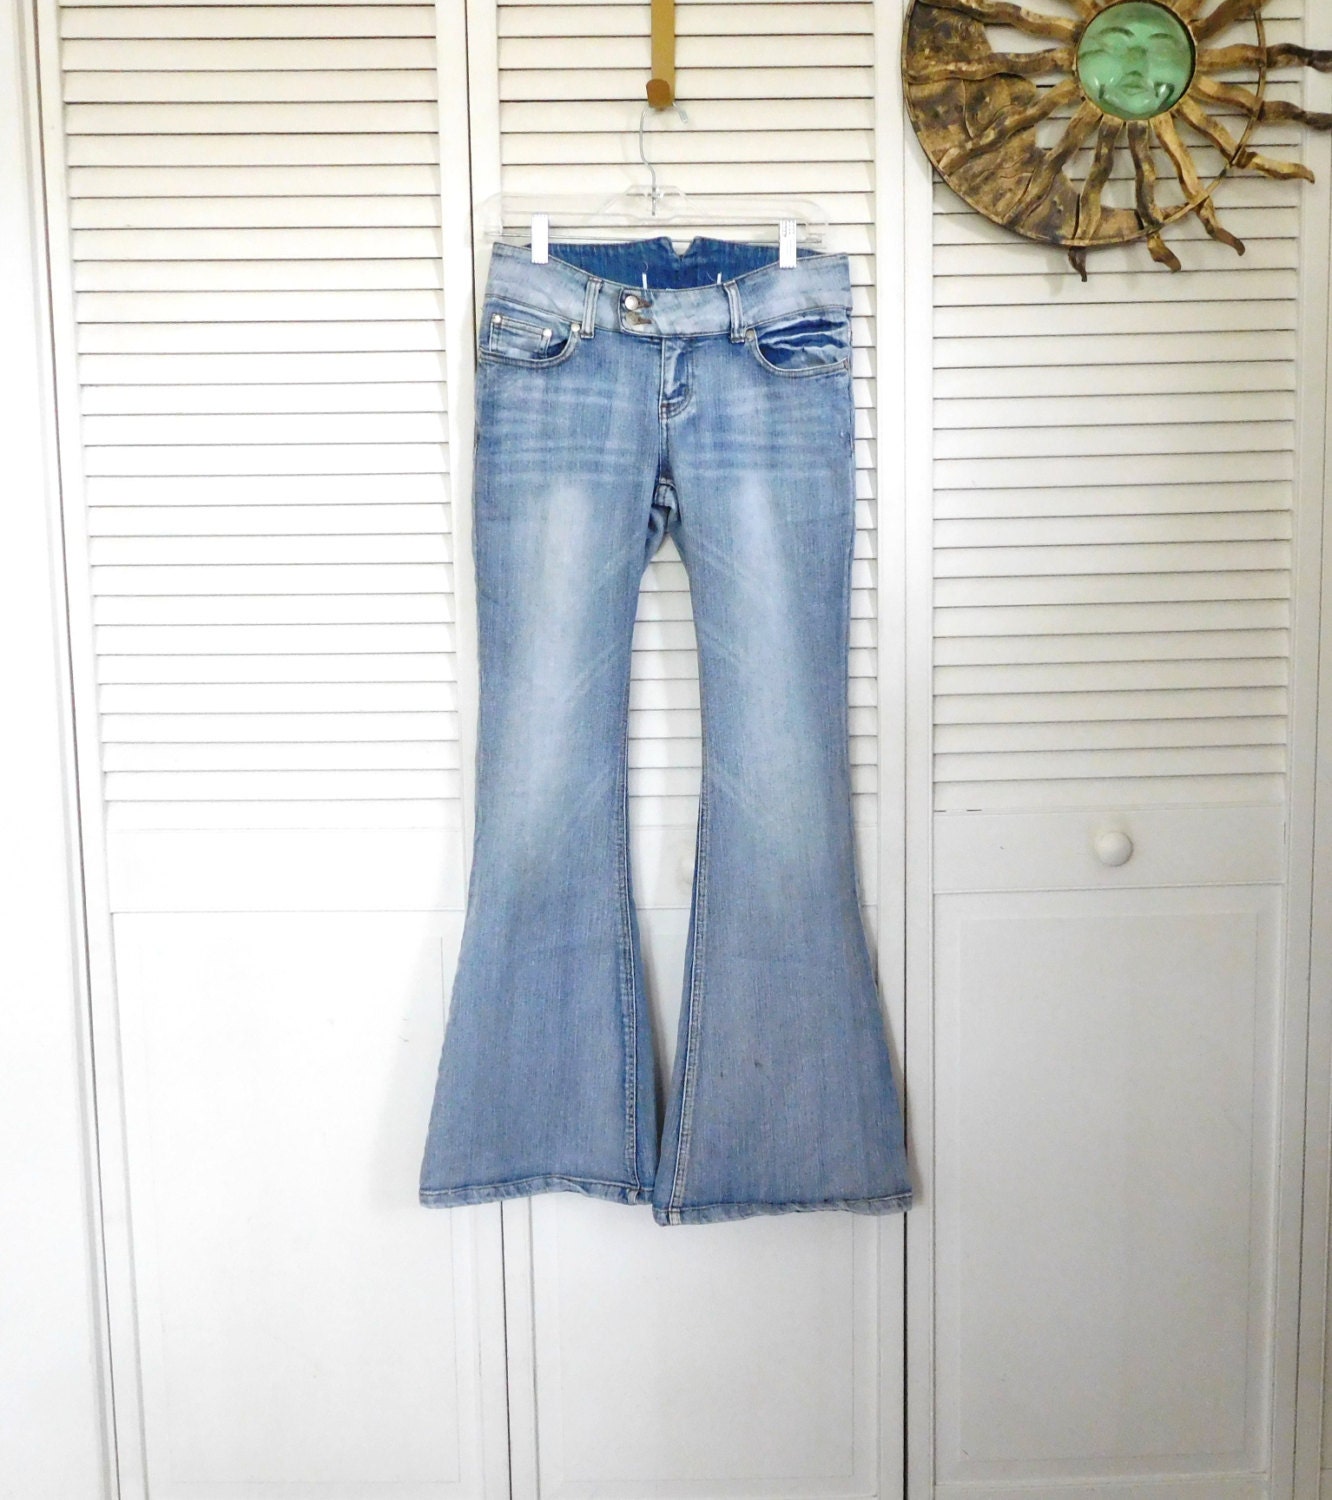 Hippie Bell Bottoms Denim Jeans Vintage Clothing Medium Wash